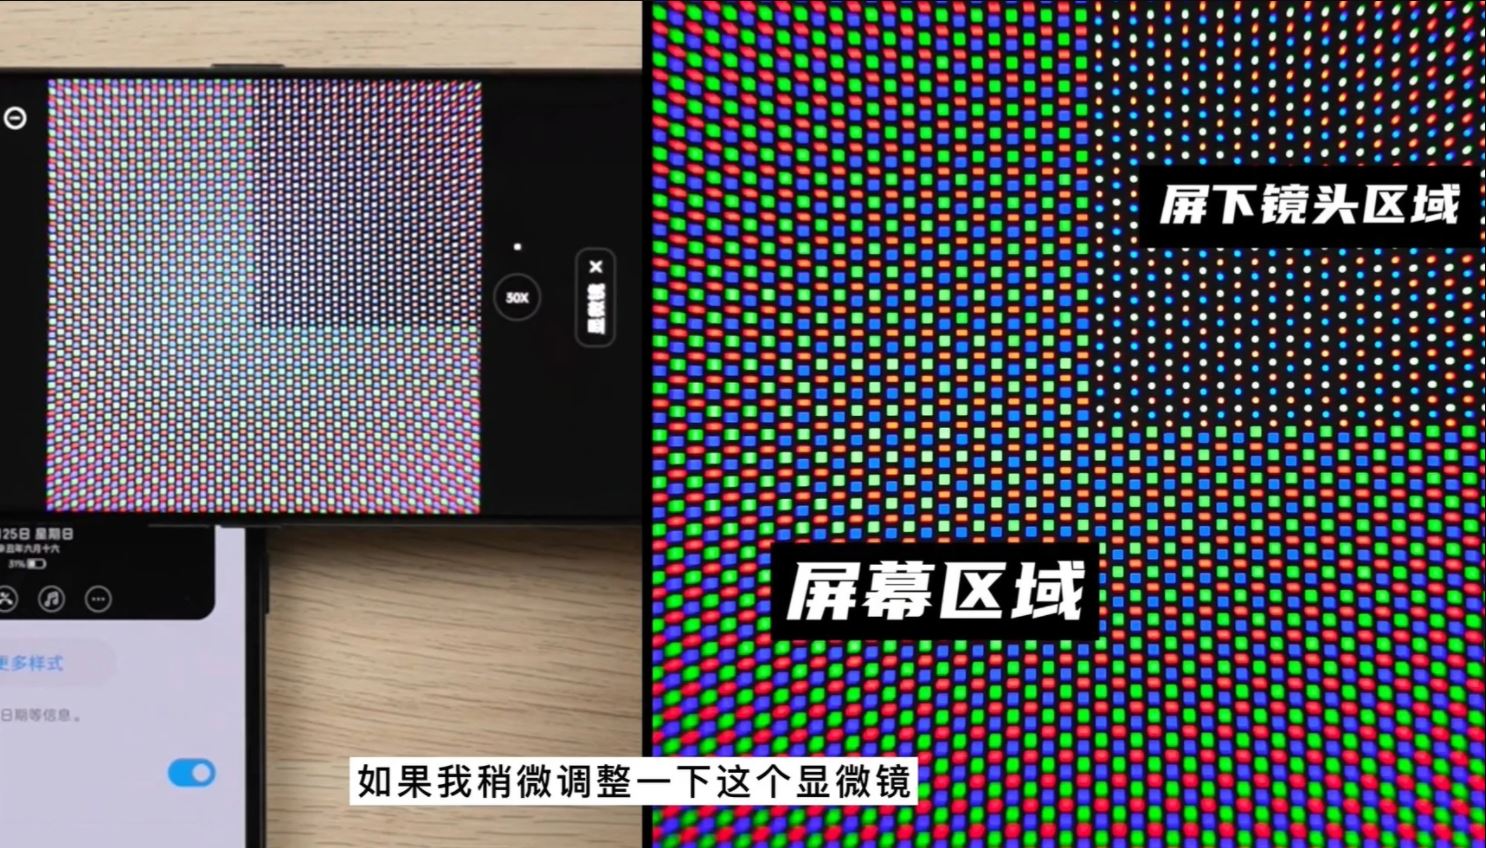 ZTE ra mắt smartphone với camera ẩn dưới màn hình thế hệ mới, giá từ 7.7 triệu đồng - Ảnh 3.